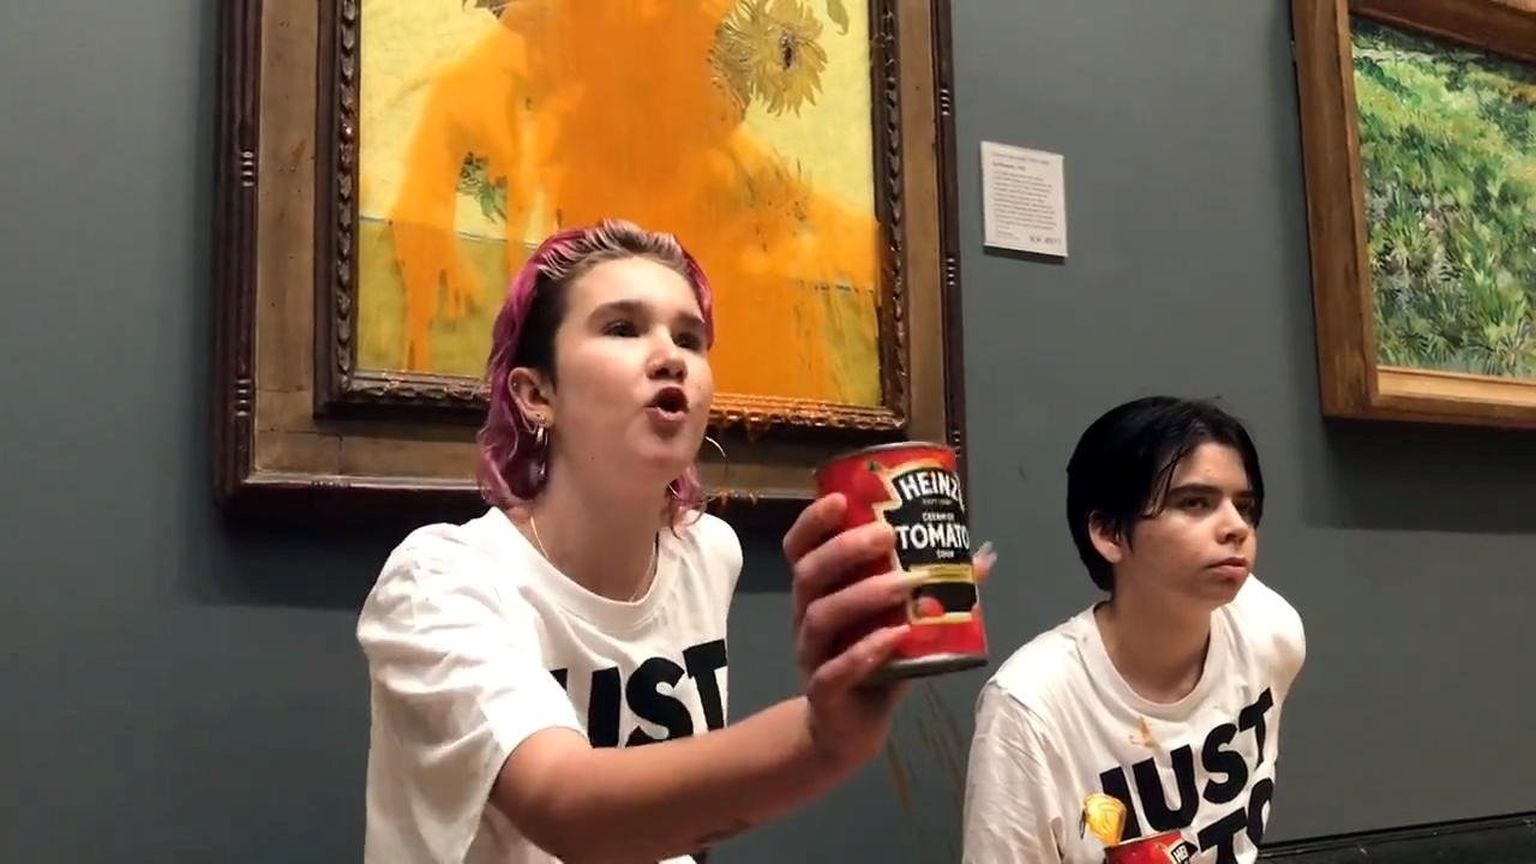 Kaks keskkonnaaktivisti, kes valasid Vincent Van Gogh’i maali Päevalilled üle Heinzi tomatisupiga